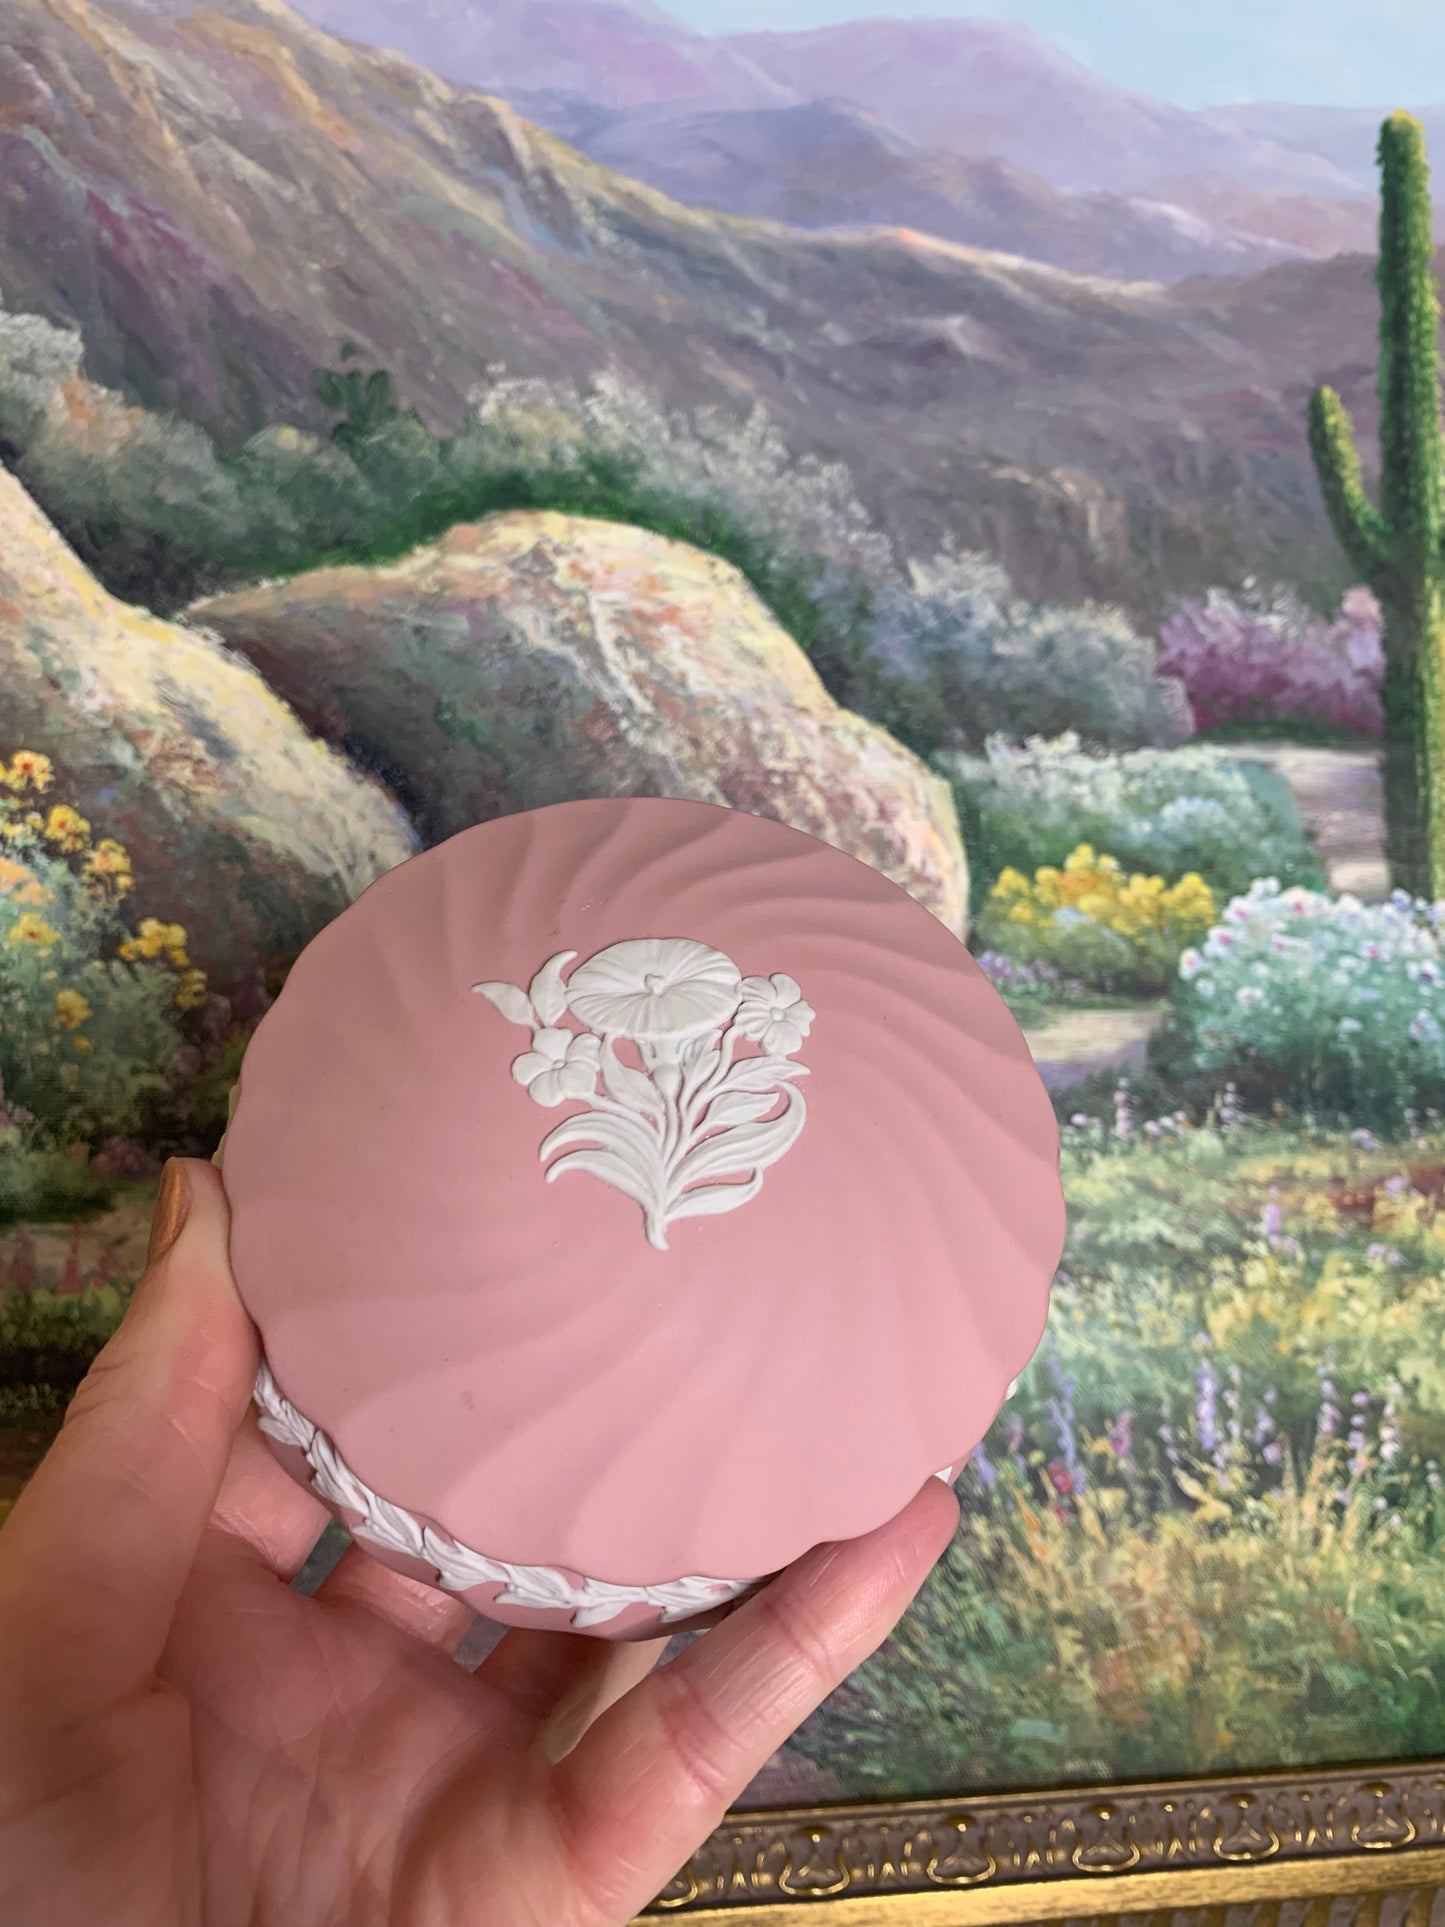 Rare Wedgwood Jasperware Pink With flowers trinket box - As is!